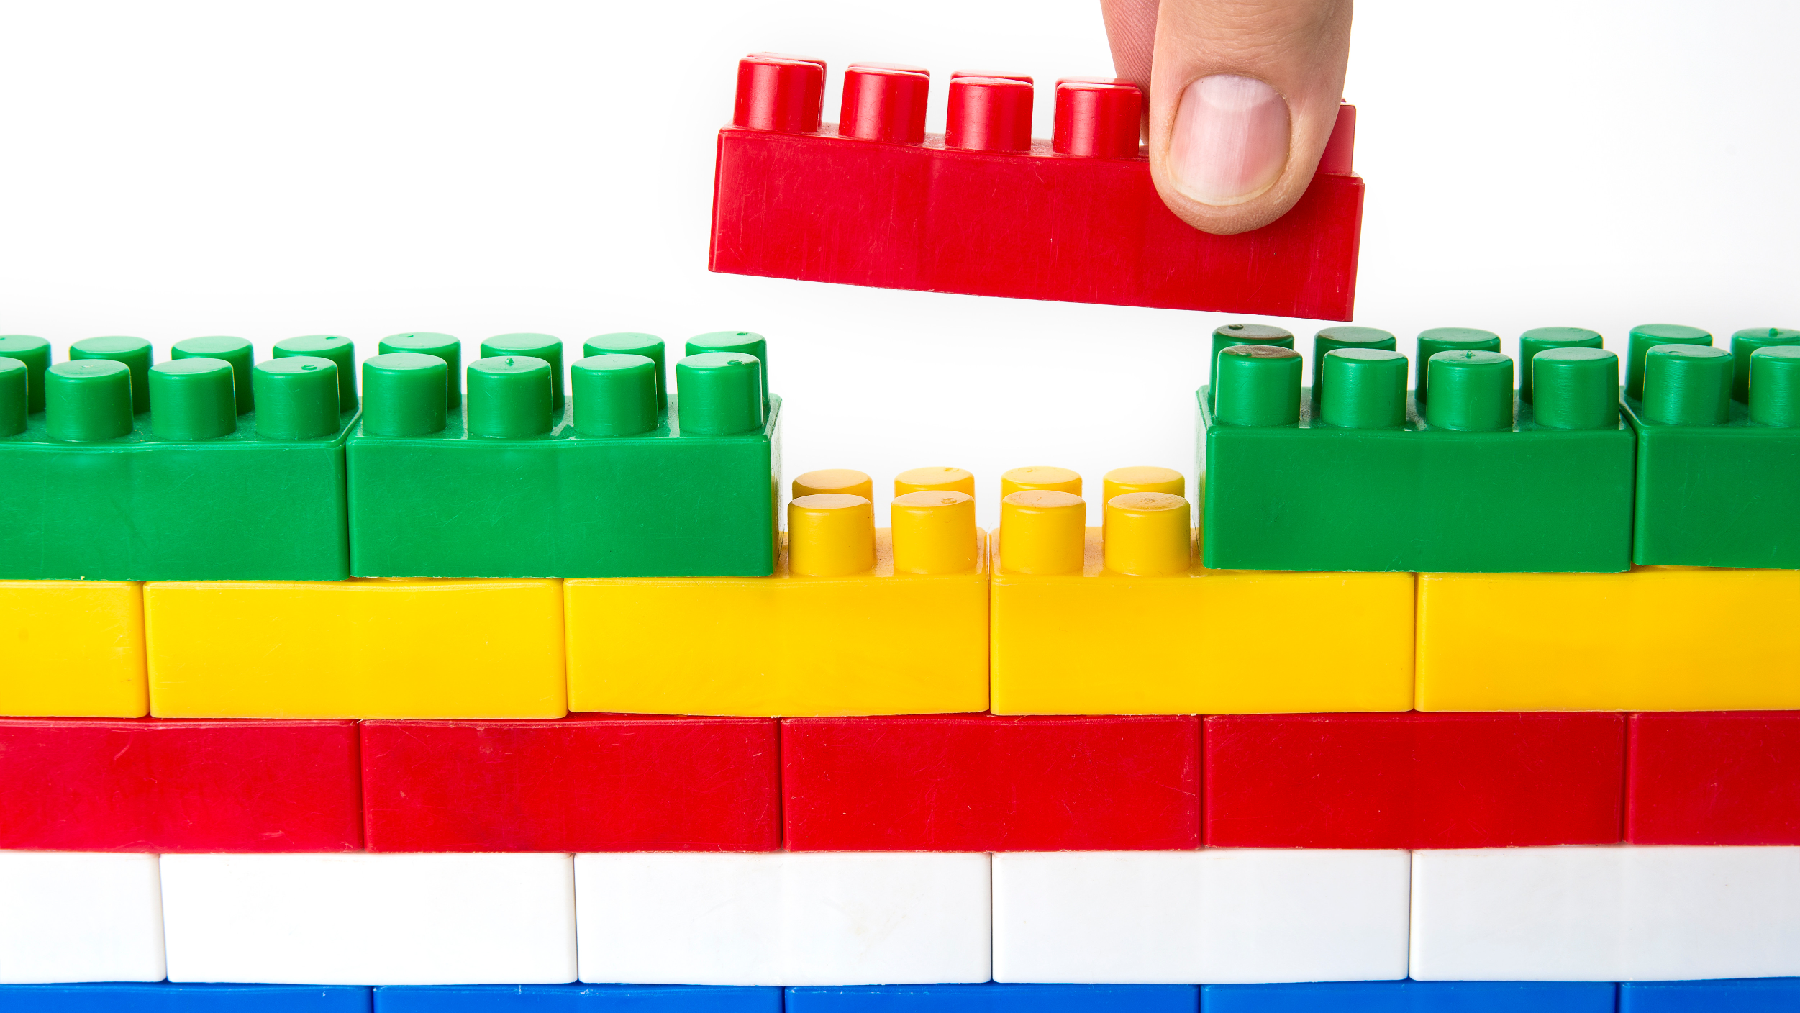 Image of colorful lego bricks